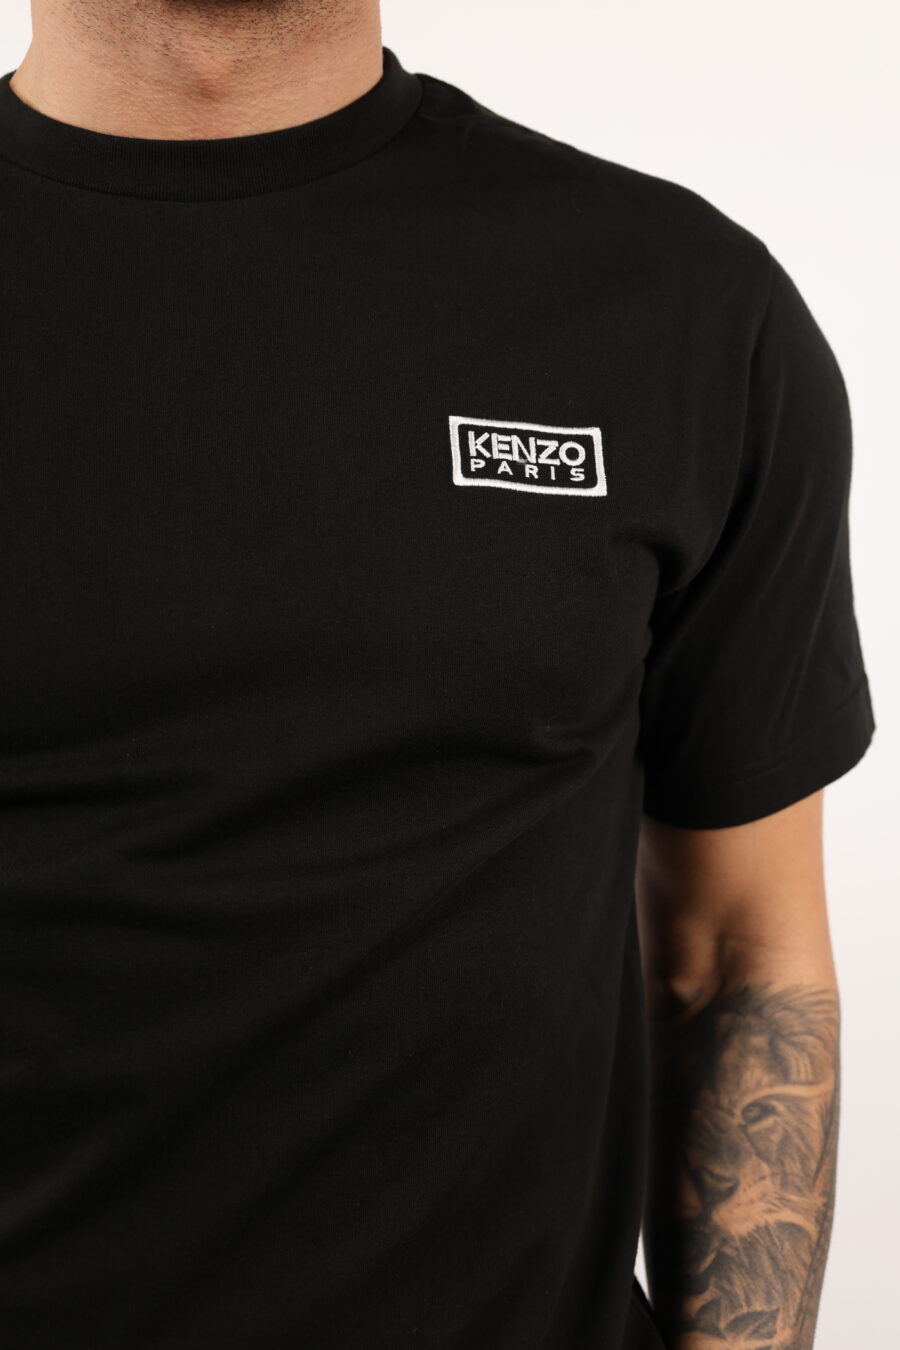 Camiseta negra con minilogo "KP classic" - 108991